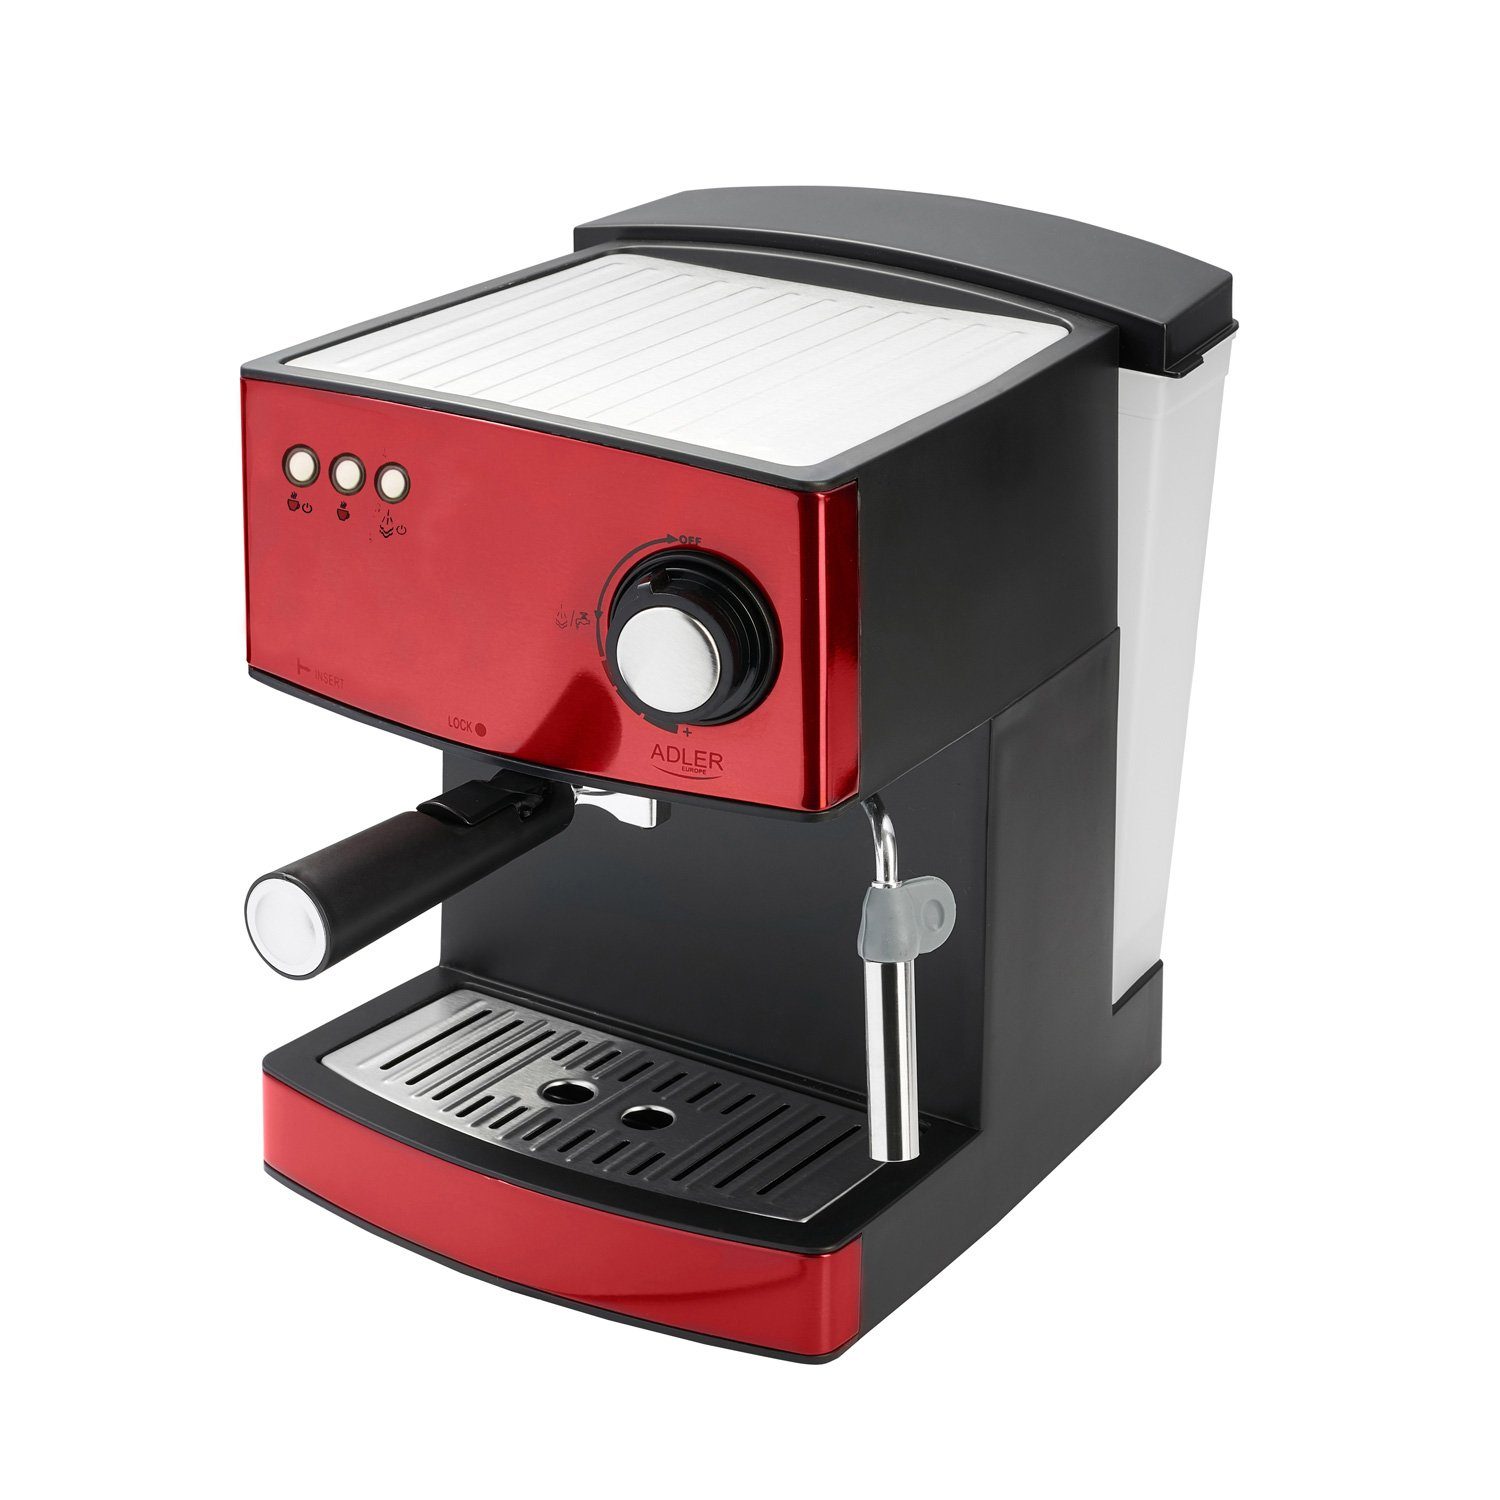 Adler Espressomaschine AD 4404r Espressomaschine 15 bar mit Milchaufschäumer rot